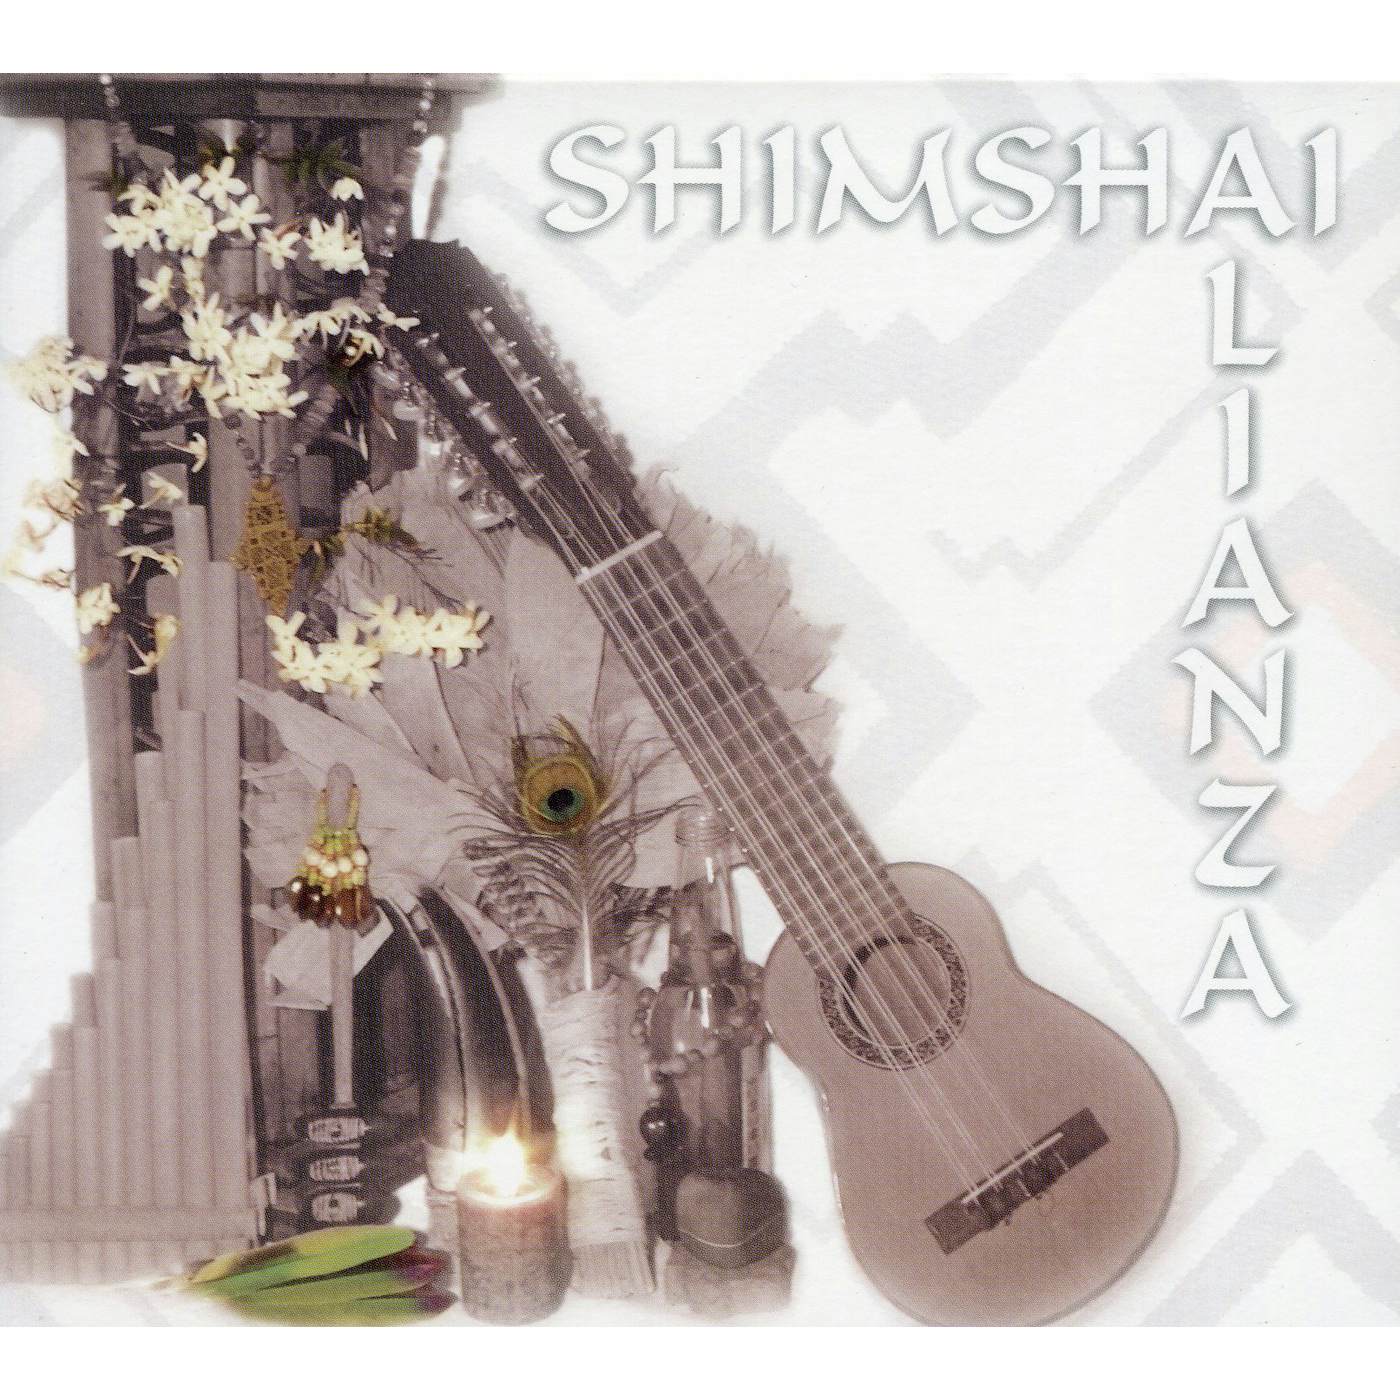 Shimshai ALIANZA CD